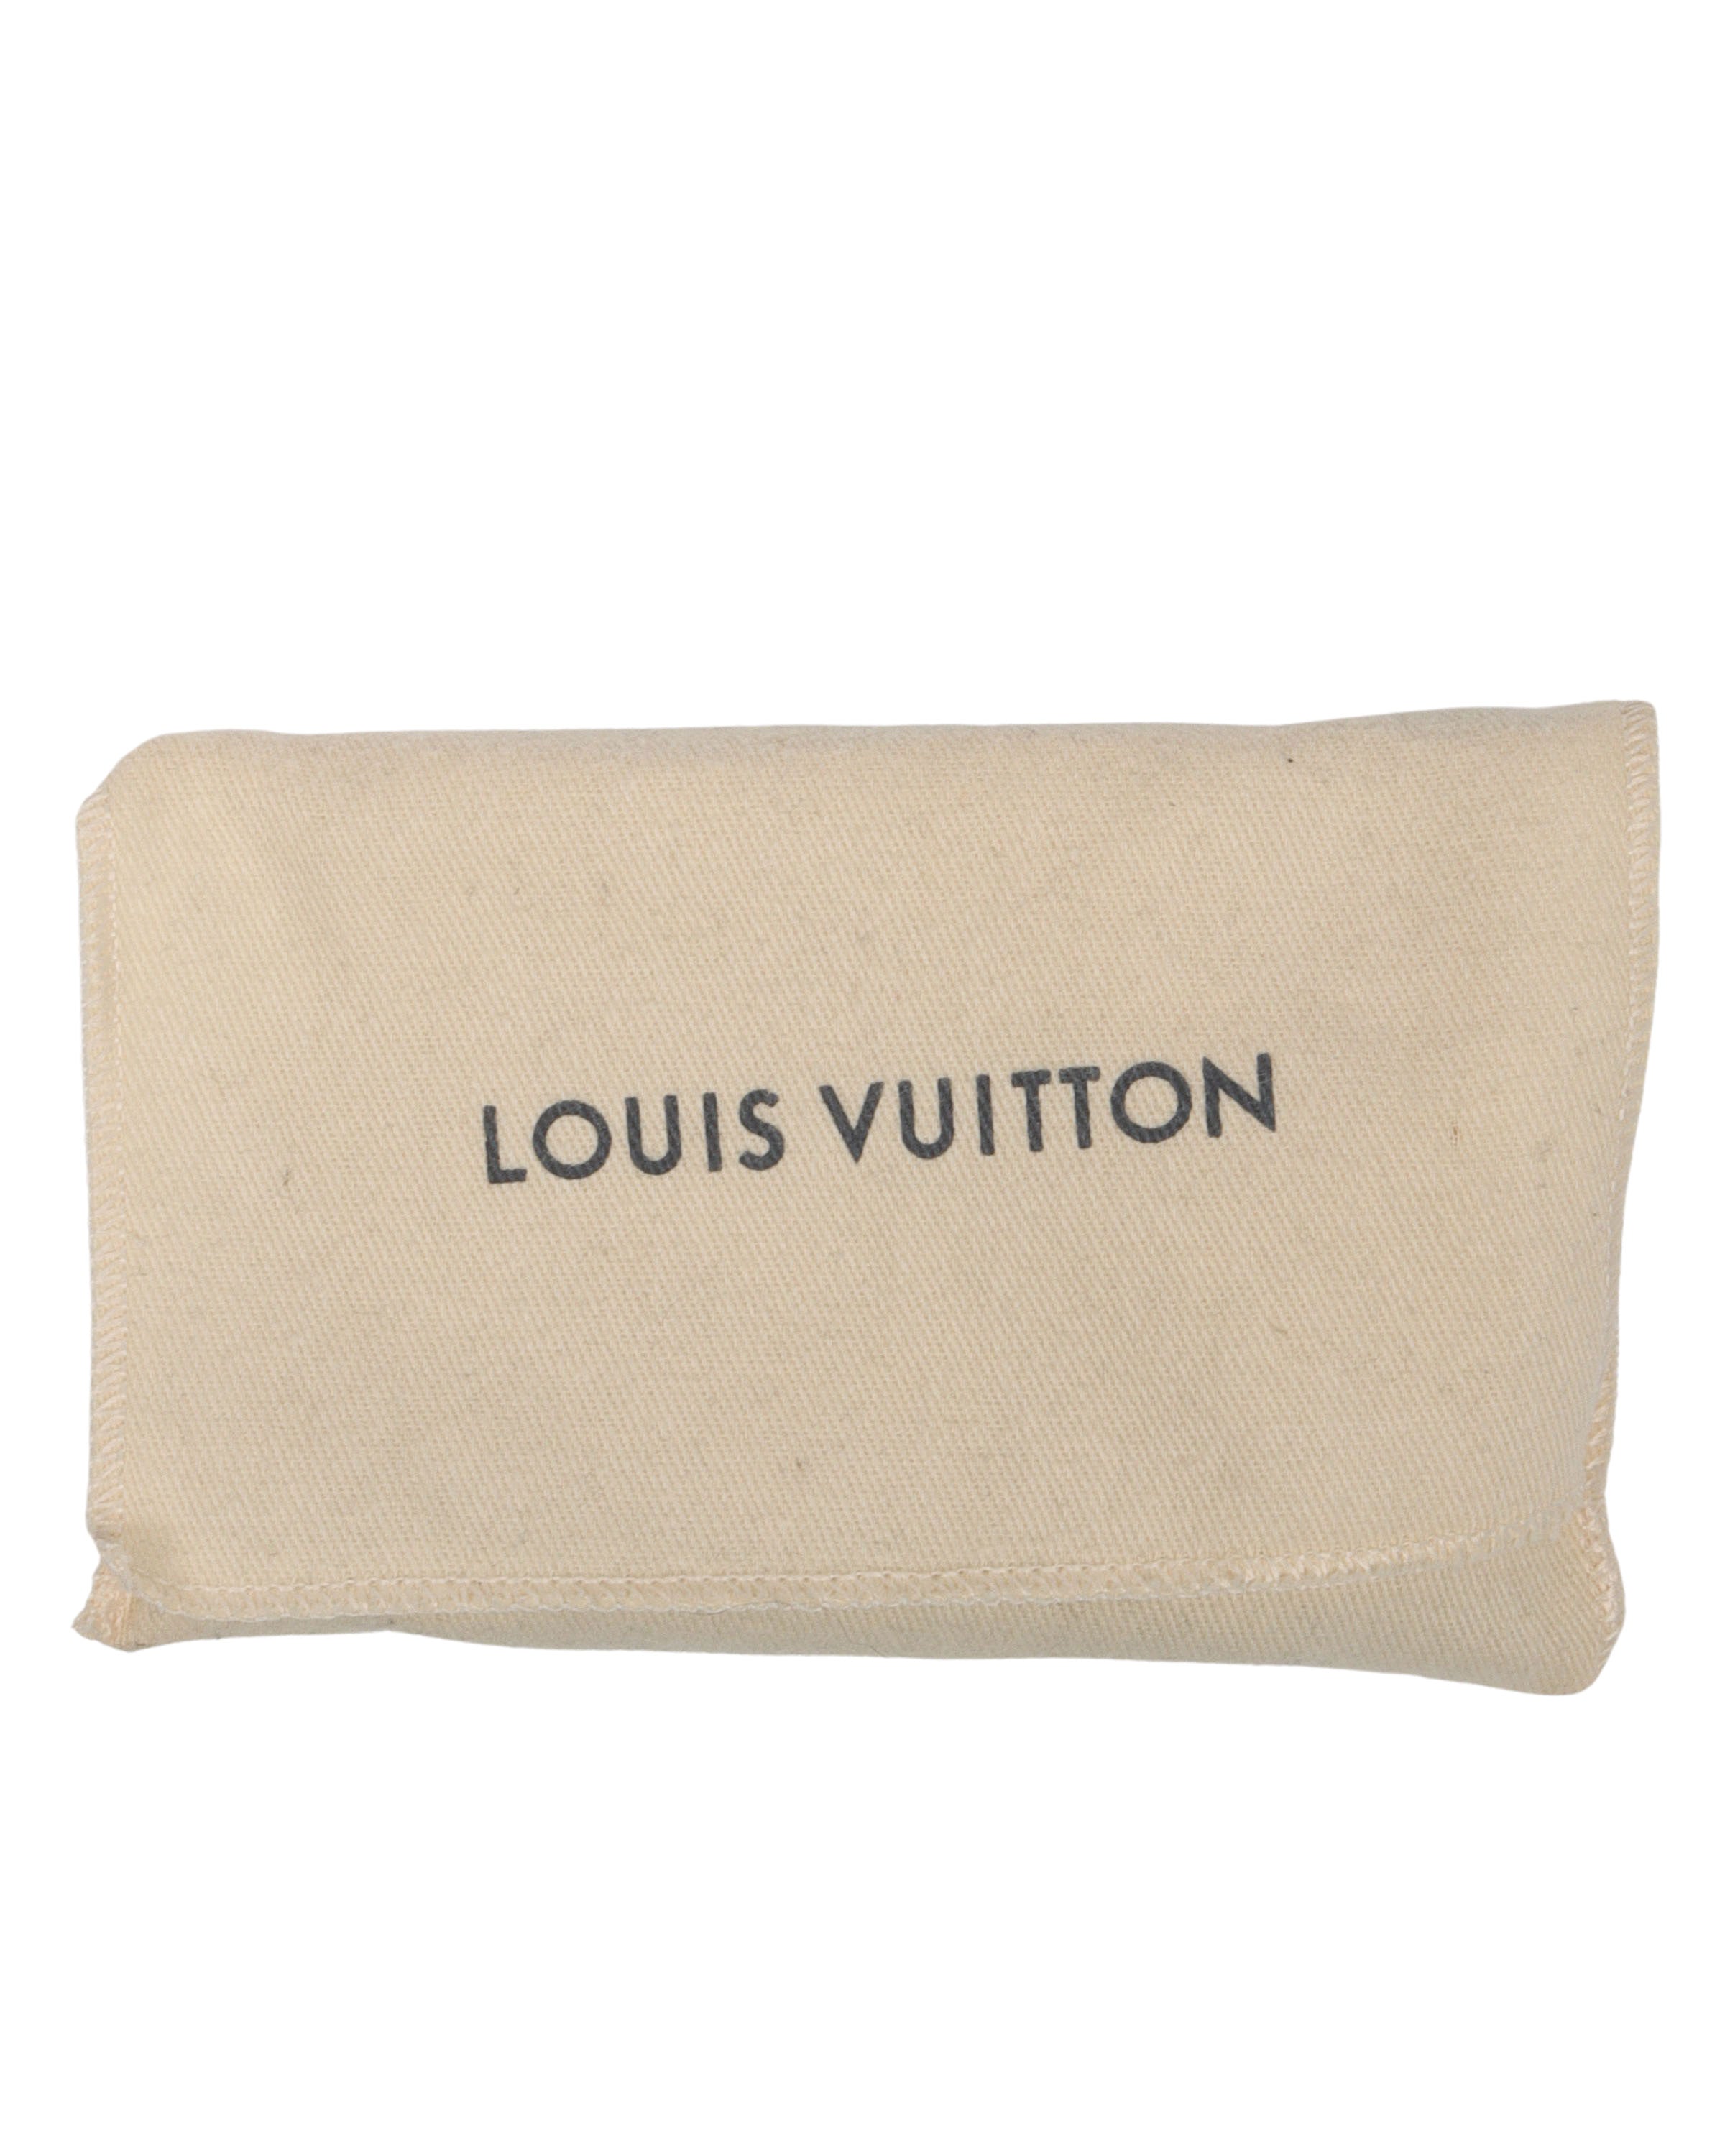 💙☁️New!! Louis Vuitton Clouds Virgil Abloh POCHETTE A4☁️💙